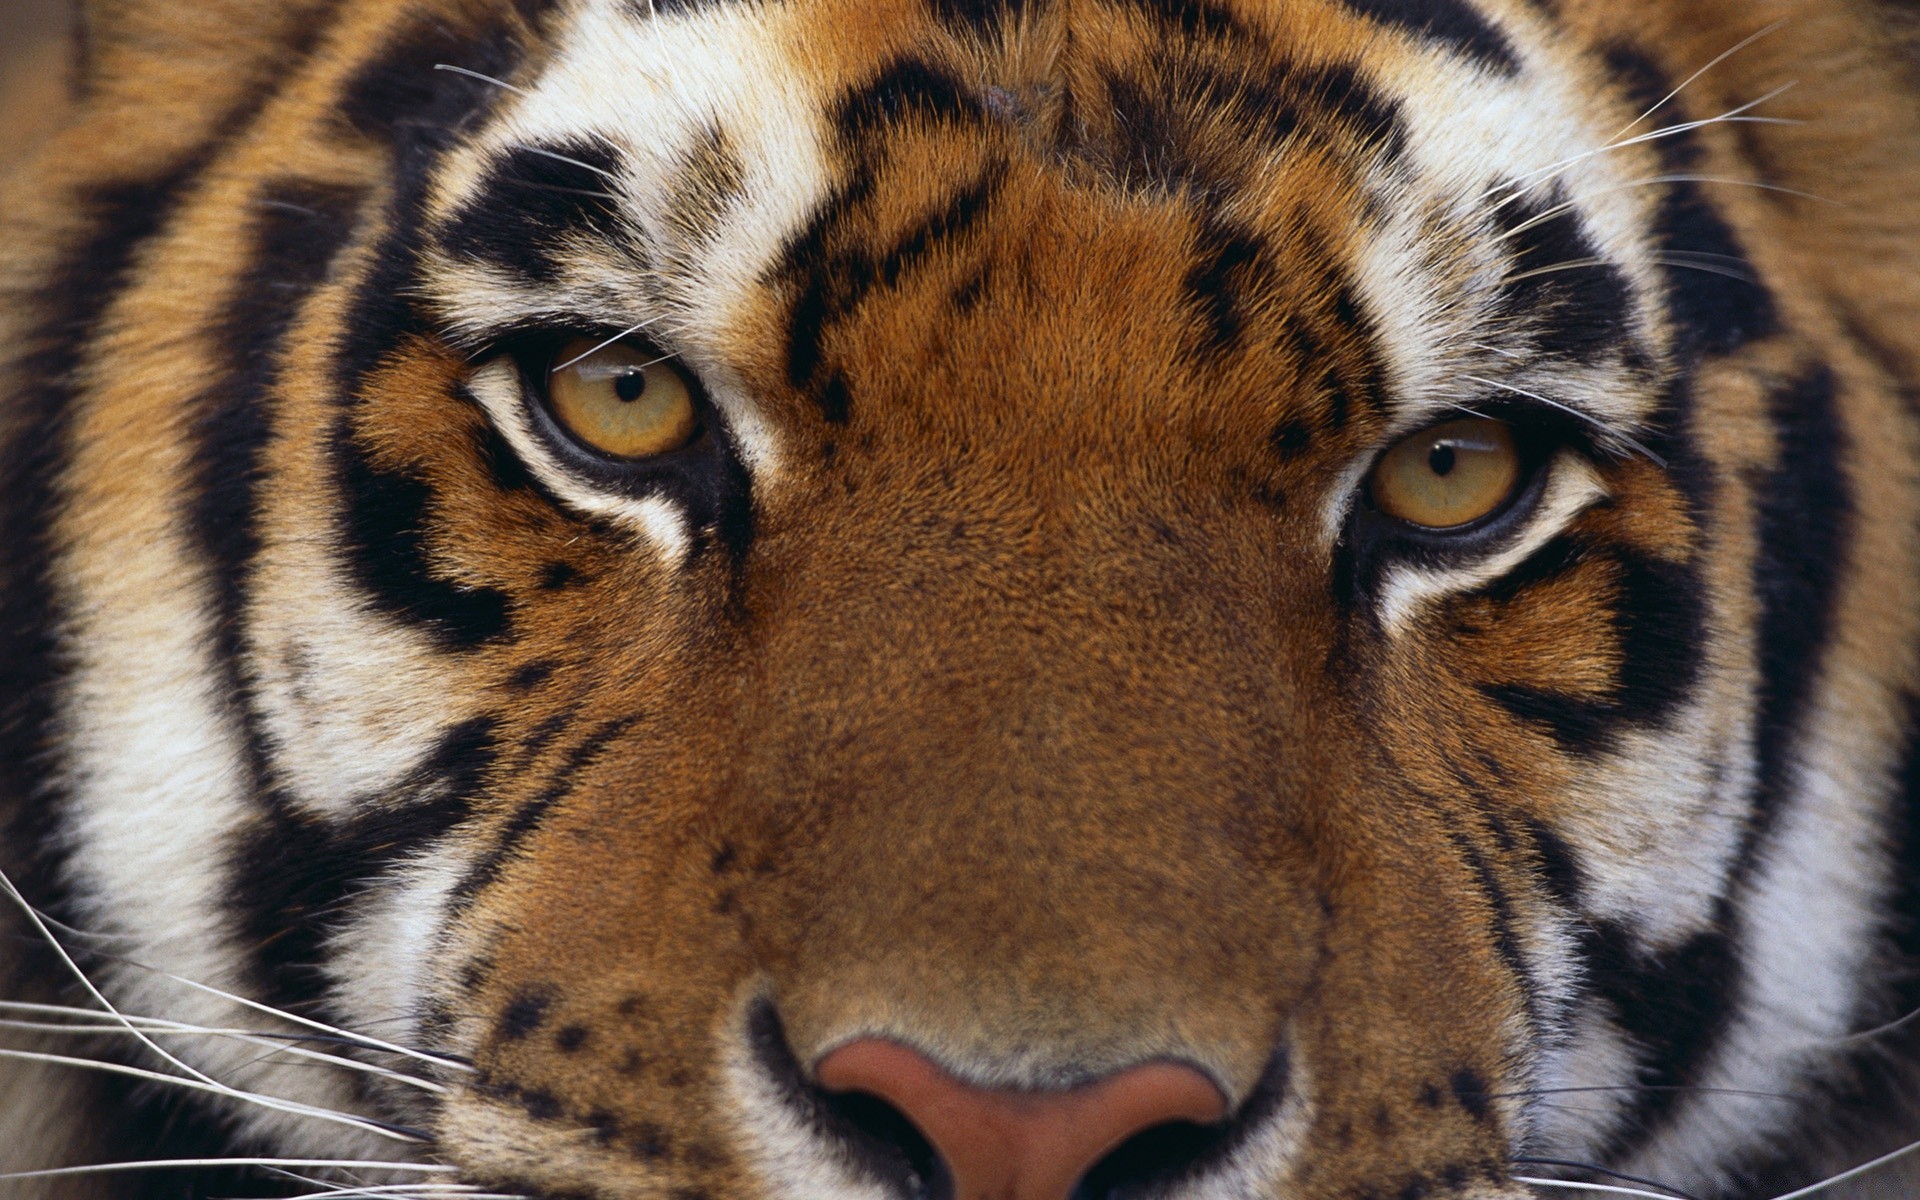 животные тигр кошка дикой природы зоопарк джунгли хищник животное мясоед млекопитающее сафари большой полоса мех сибирский тигрица тигрис охотник пантера дикий глядя